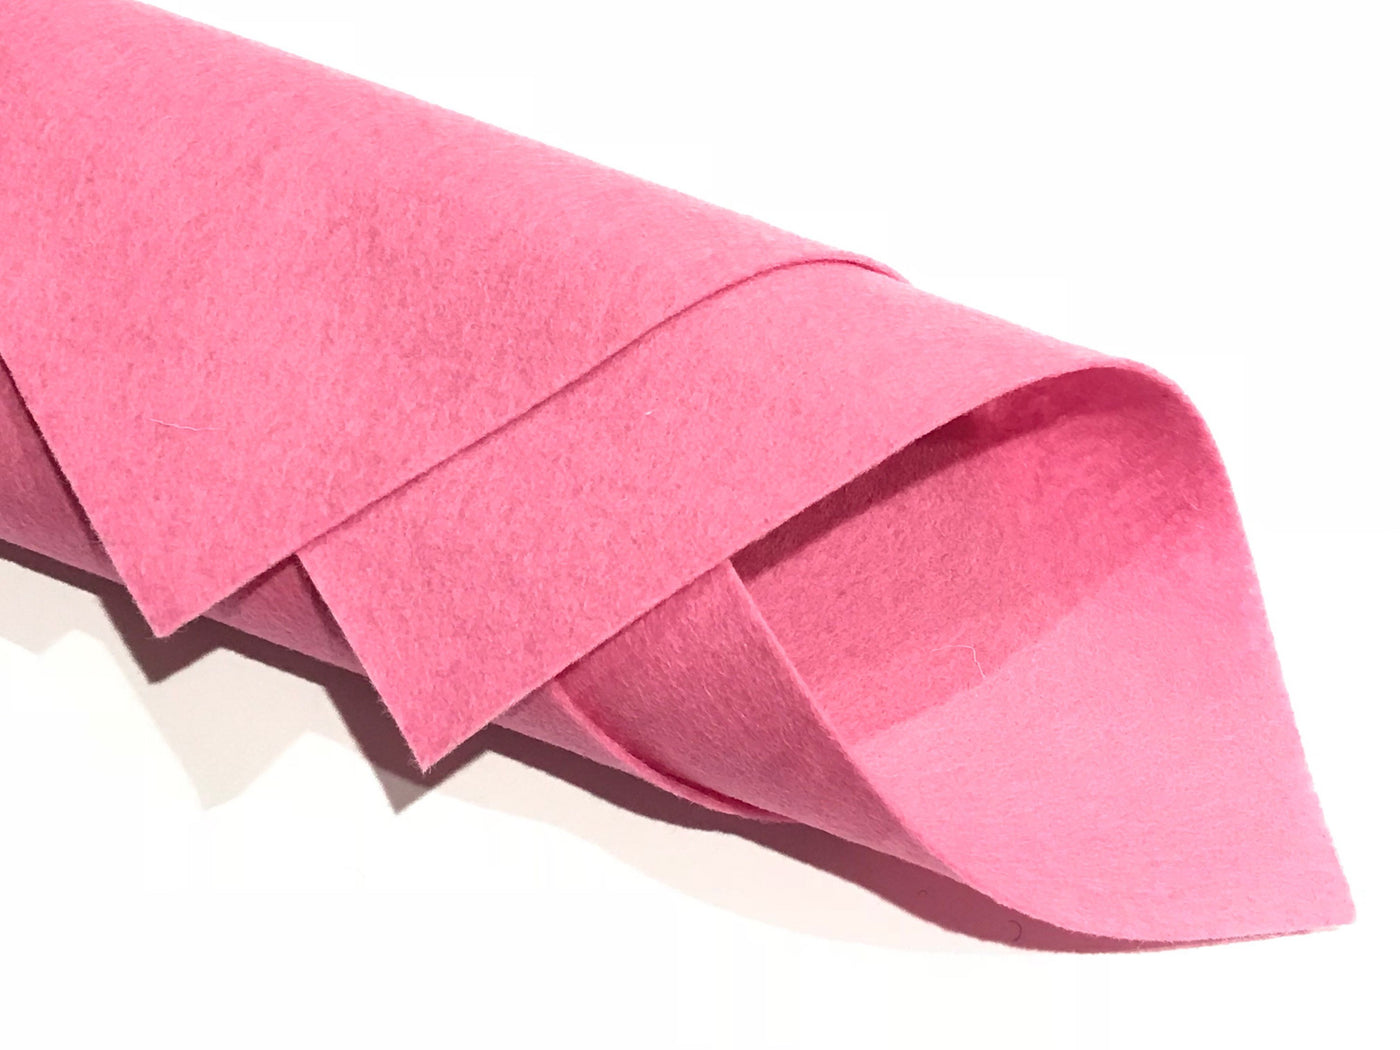 1mm Candy Pink Merino Wool Felt 8 x 11" Sheet - No. 26